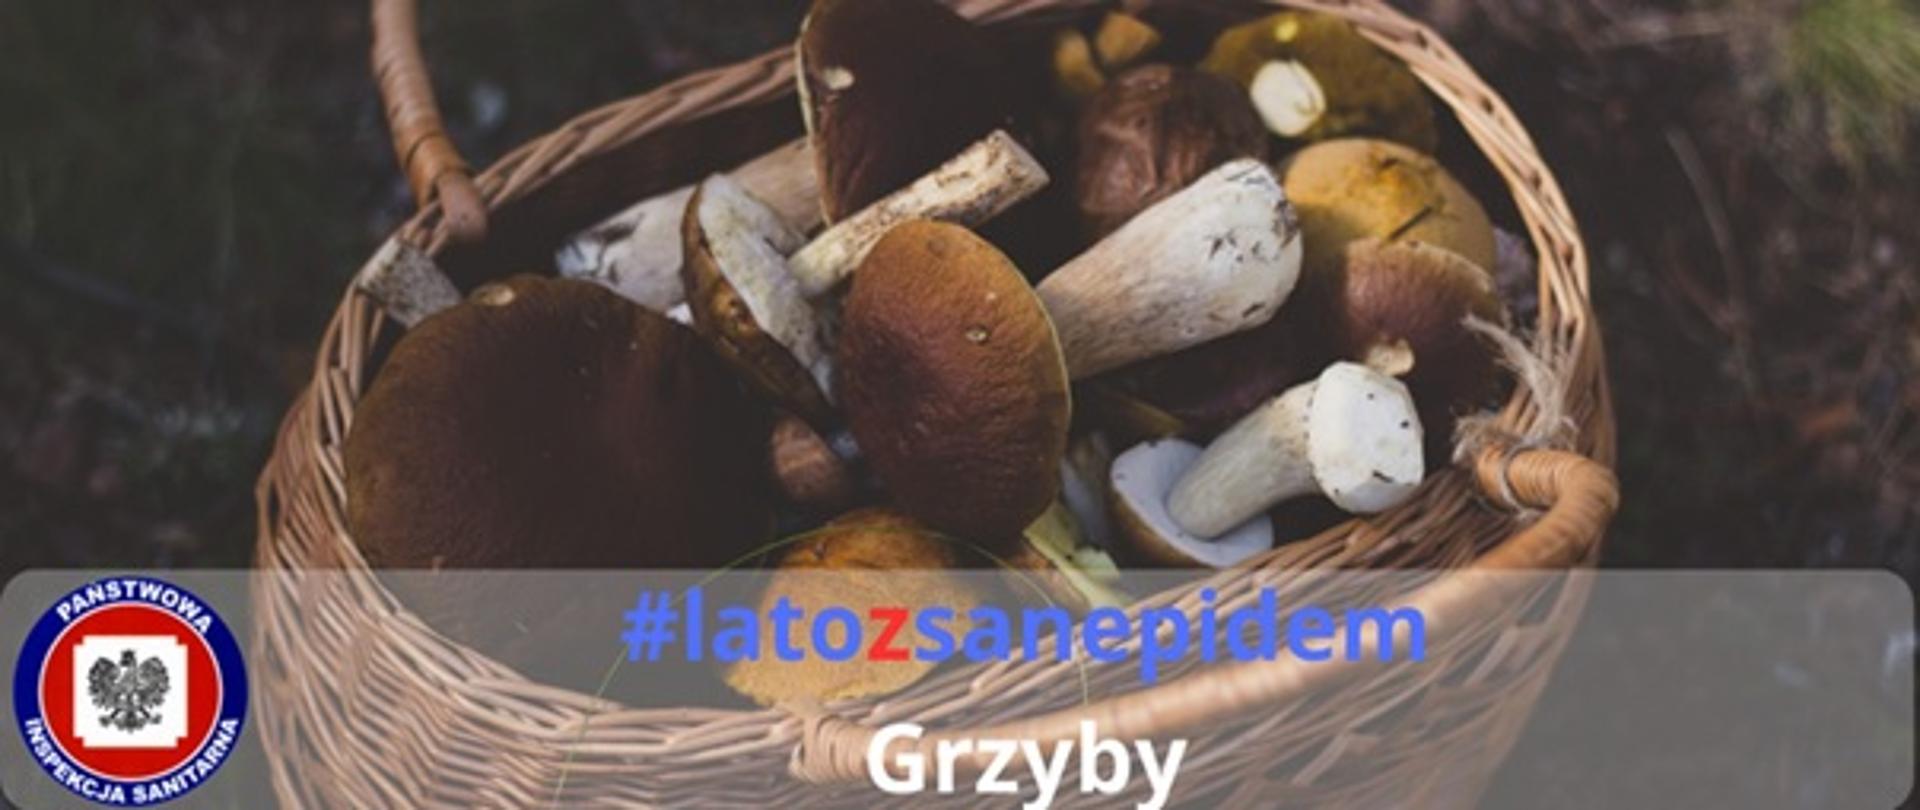 Zdjęcie przedstawiające koszyk z grzybami, logo Powiatowej stacji Sanitarno-Epidemiologicznej oraz napis #latozsanepidem Grzyby 